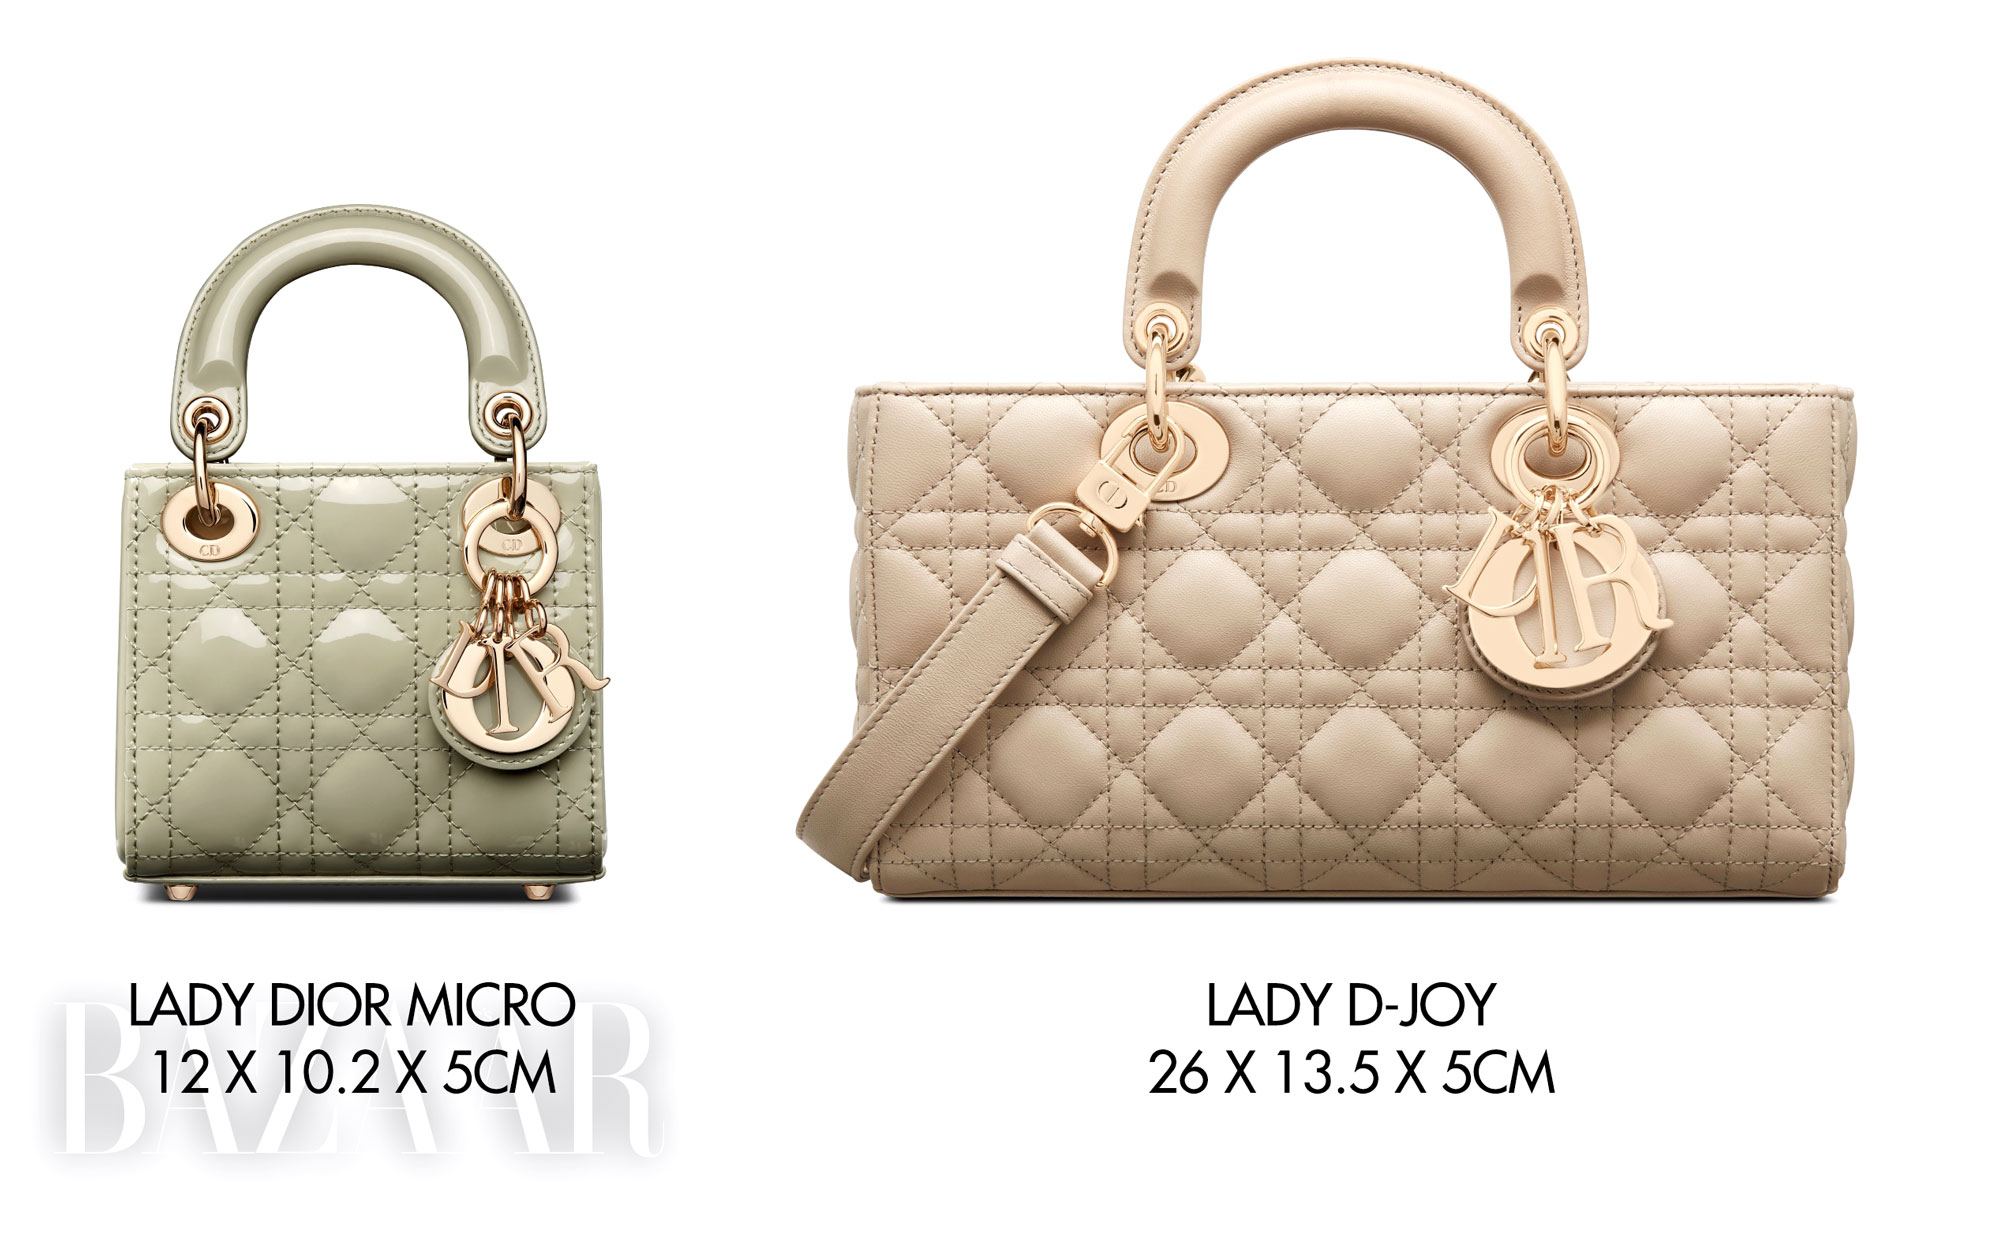 Tìm hiểu size túi Dior Lady chi tiết và chính xác nhất  Hàng Hiệu  Secondhand 2nd Mua bán hàng hiệu cũ còn tốt hàng Nhật chất lượng giá rẻ  2handgiarecomvn